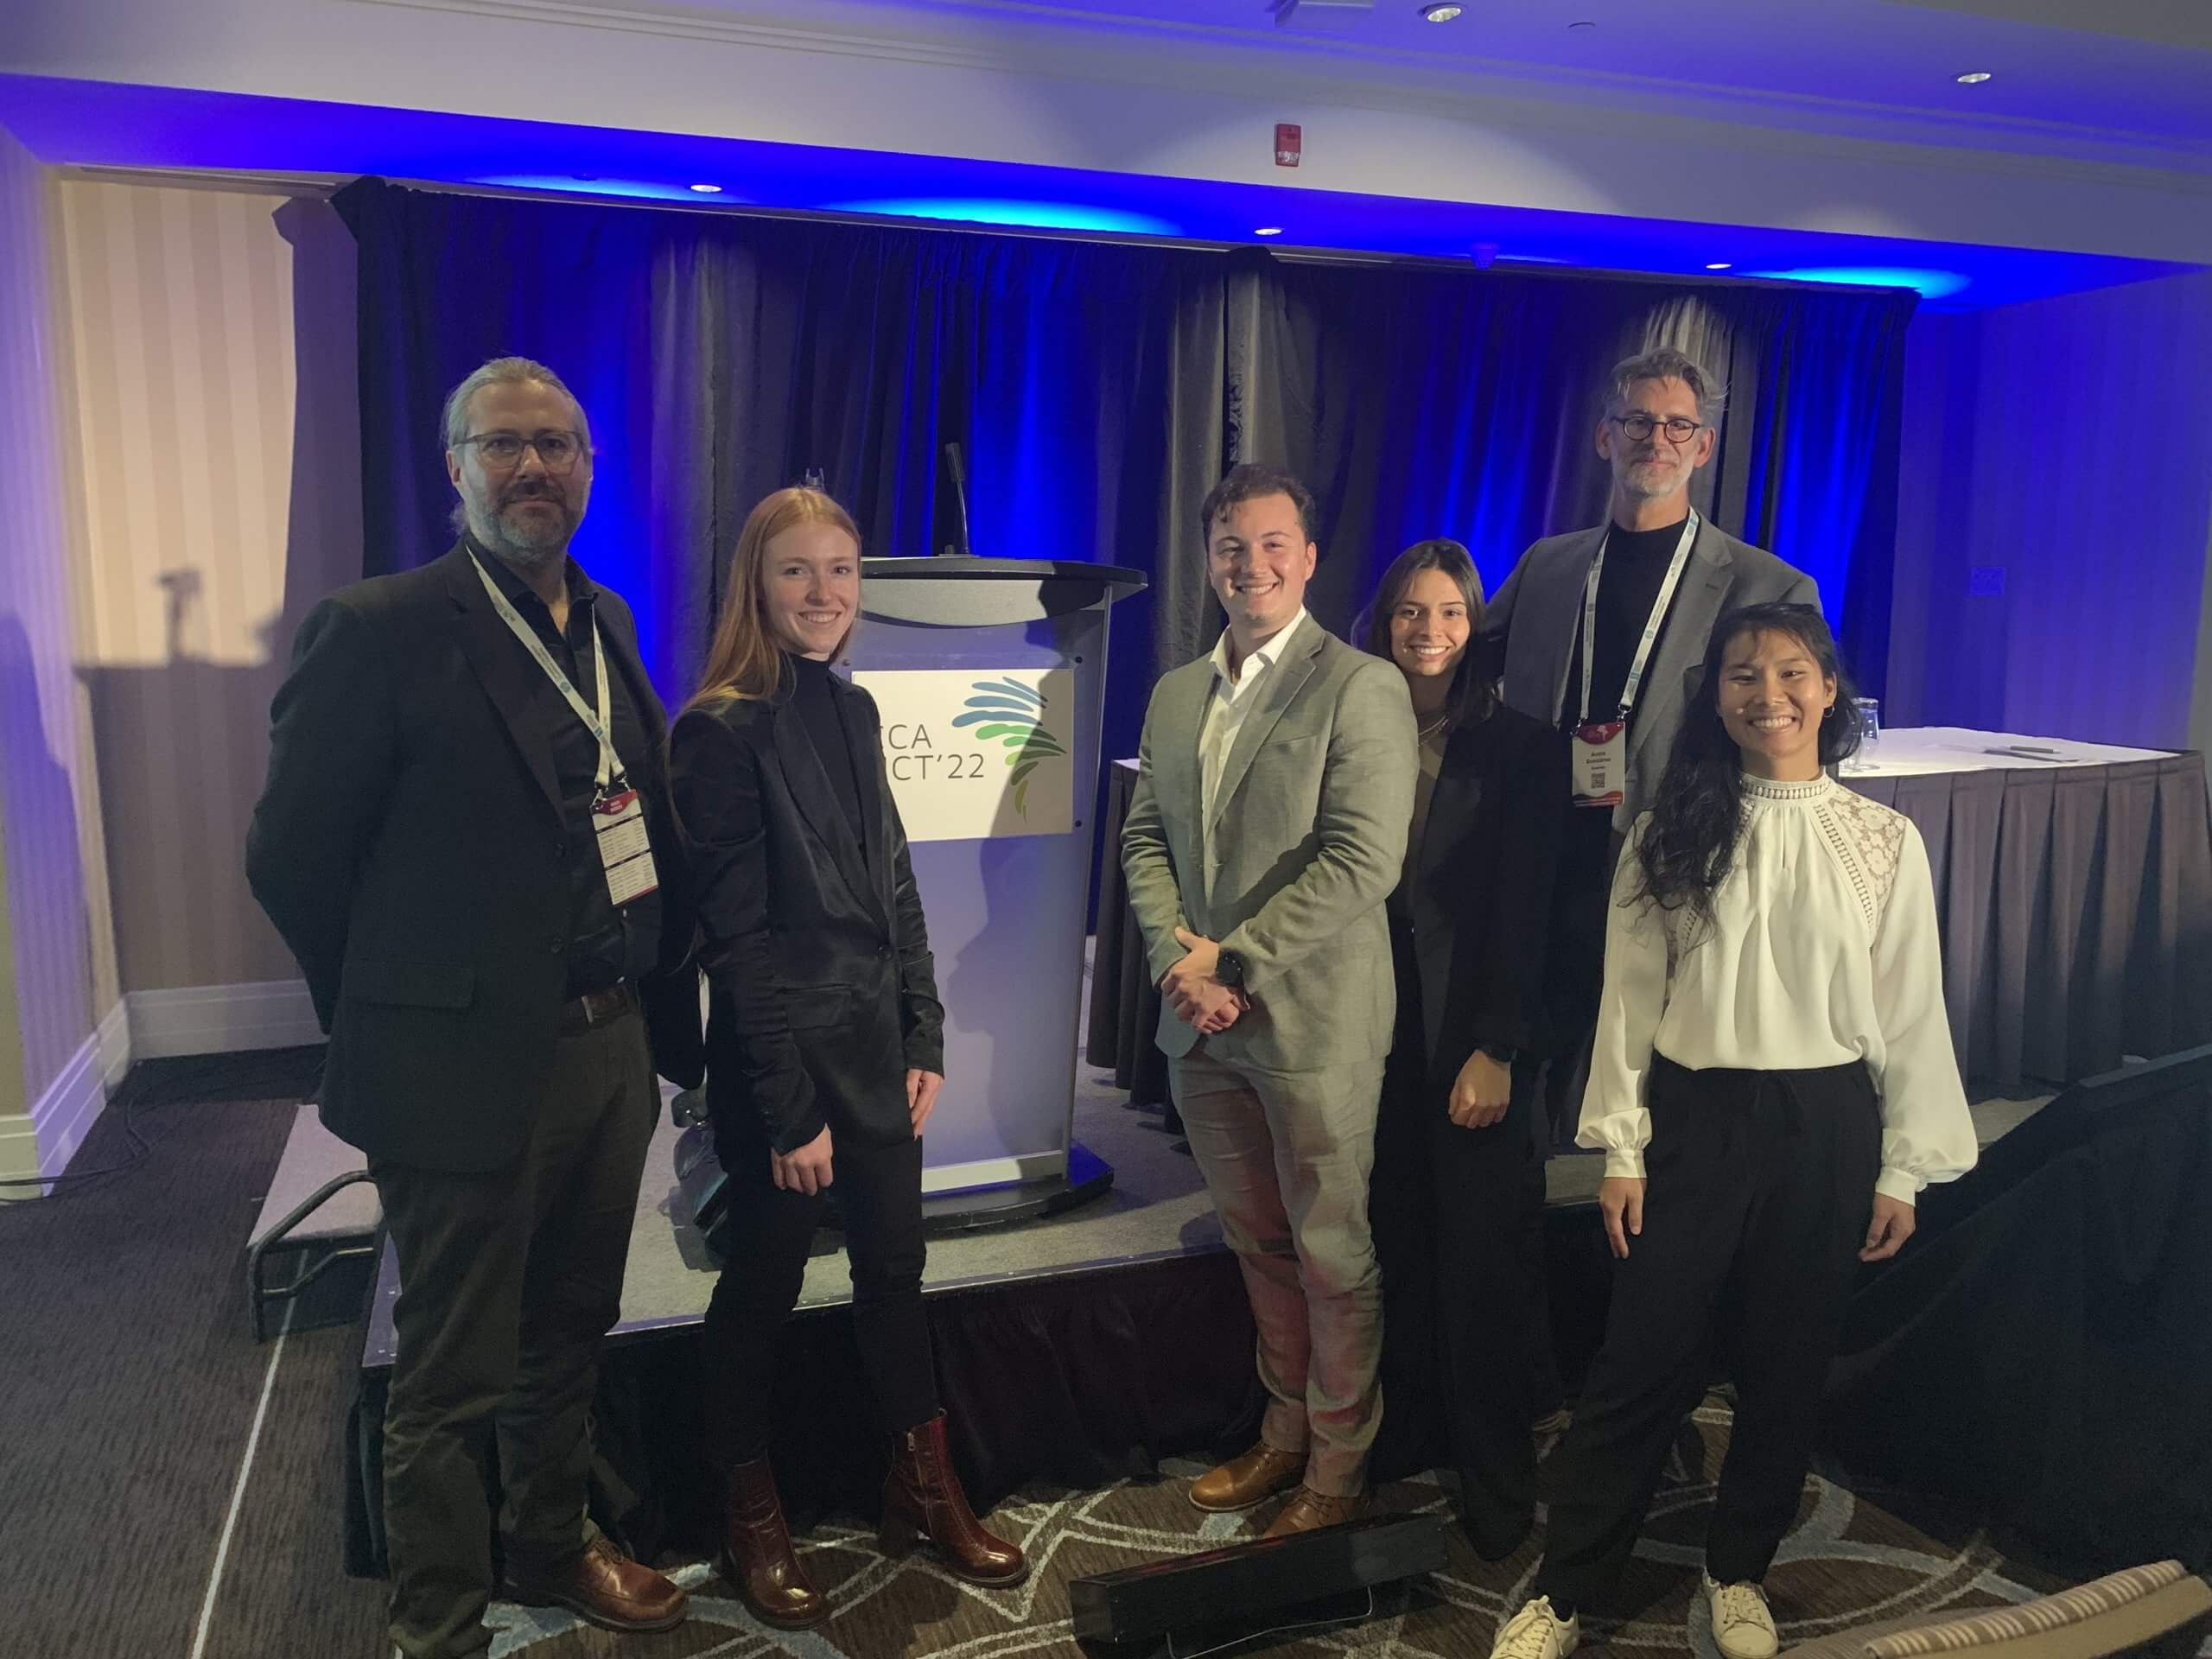 Quatre étudiants de l’UQTR impressionnent lors du congrès de l’Association canadienne de chiropratique